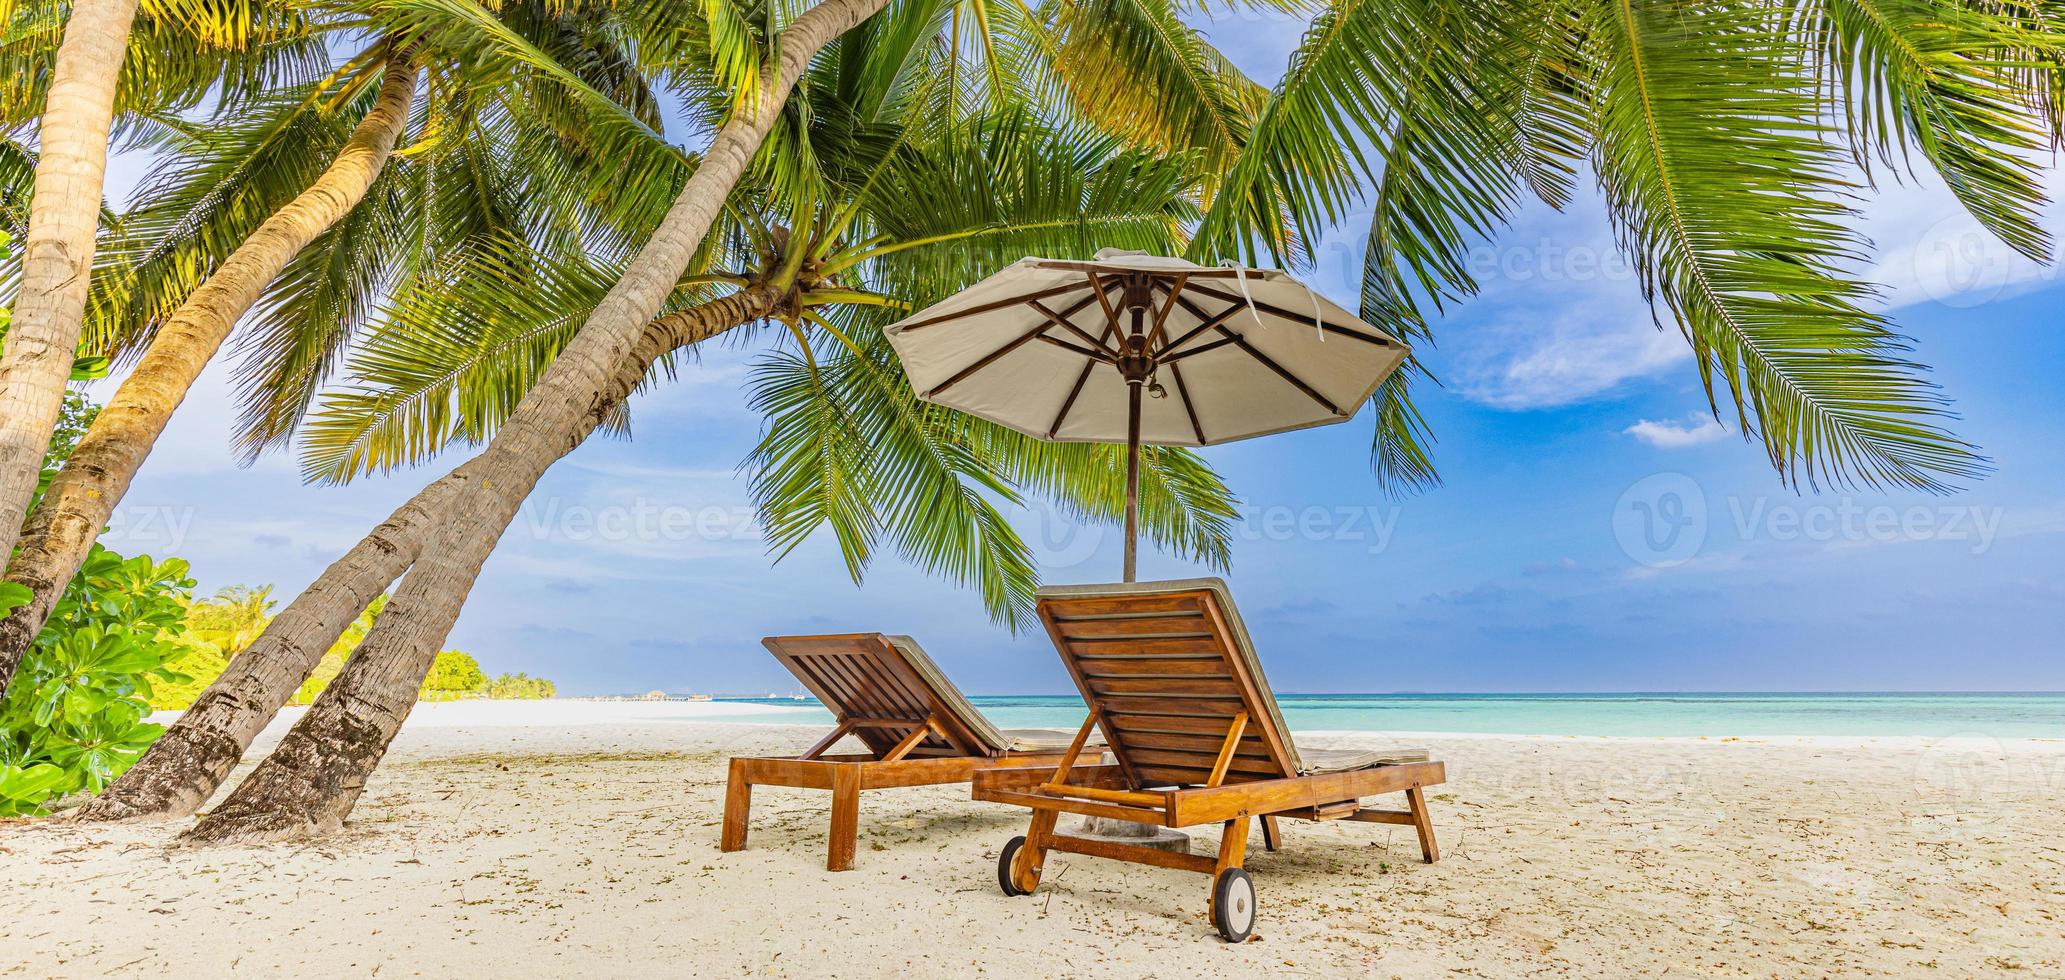 Fantastisk semester panorama på sommar ö strand. två stolar med handflatan löv och paraply, stänga havet, horisont. exotisk landskap, tropisk paradis, par roman destination baner. hav sand himmel foto